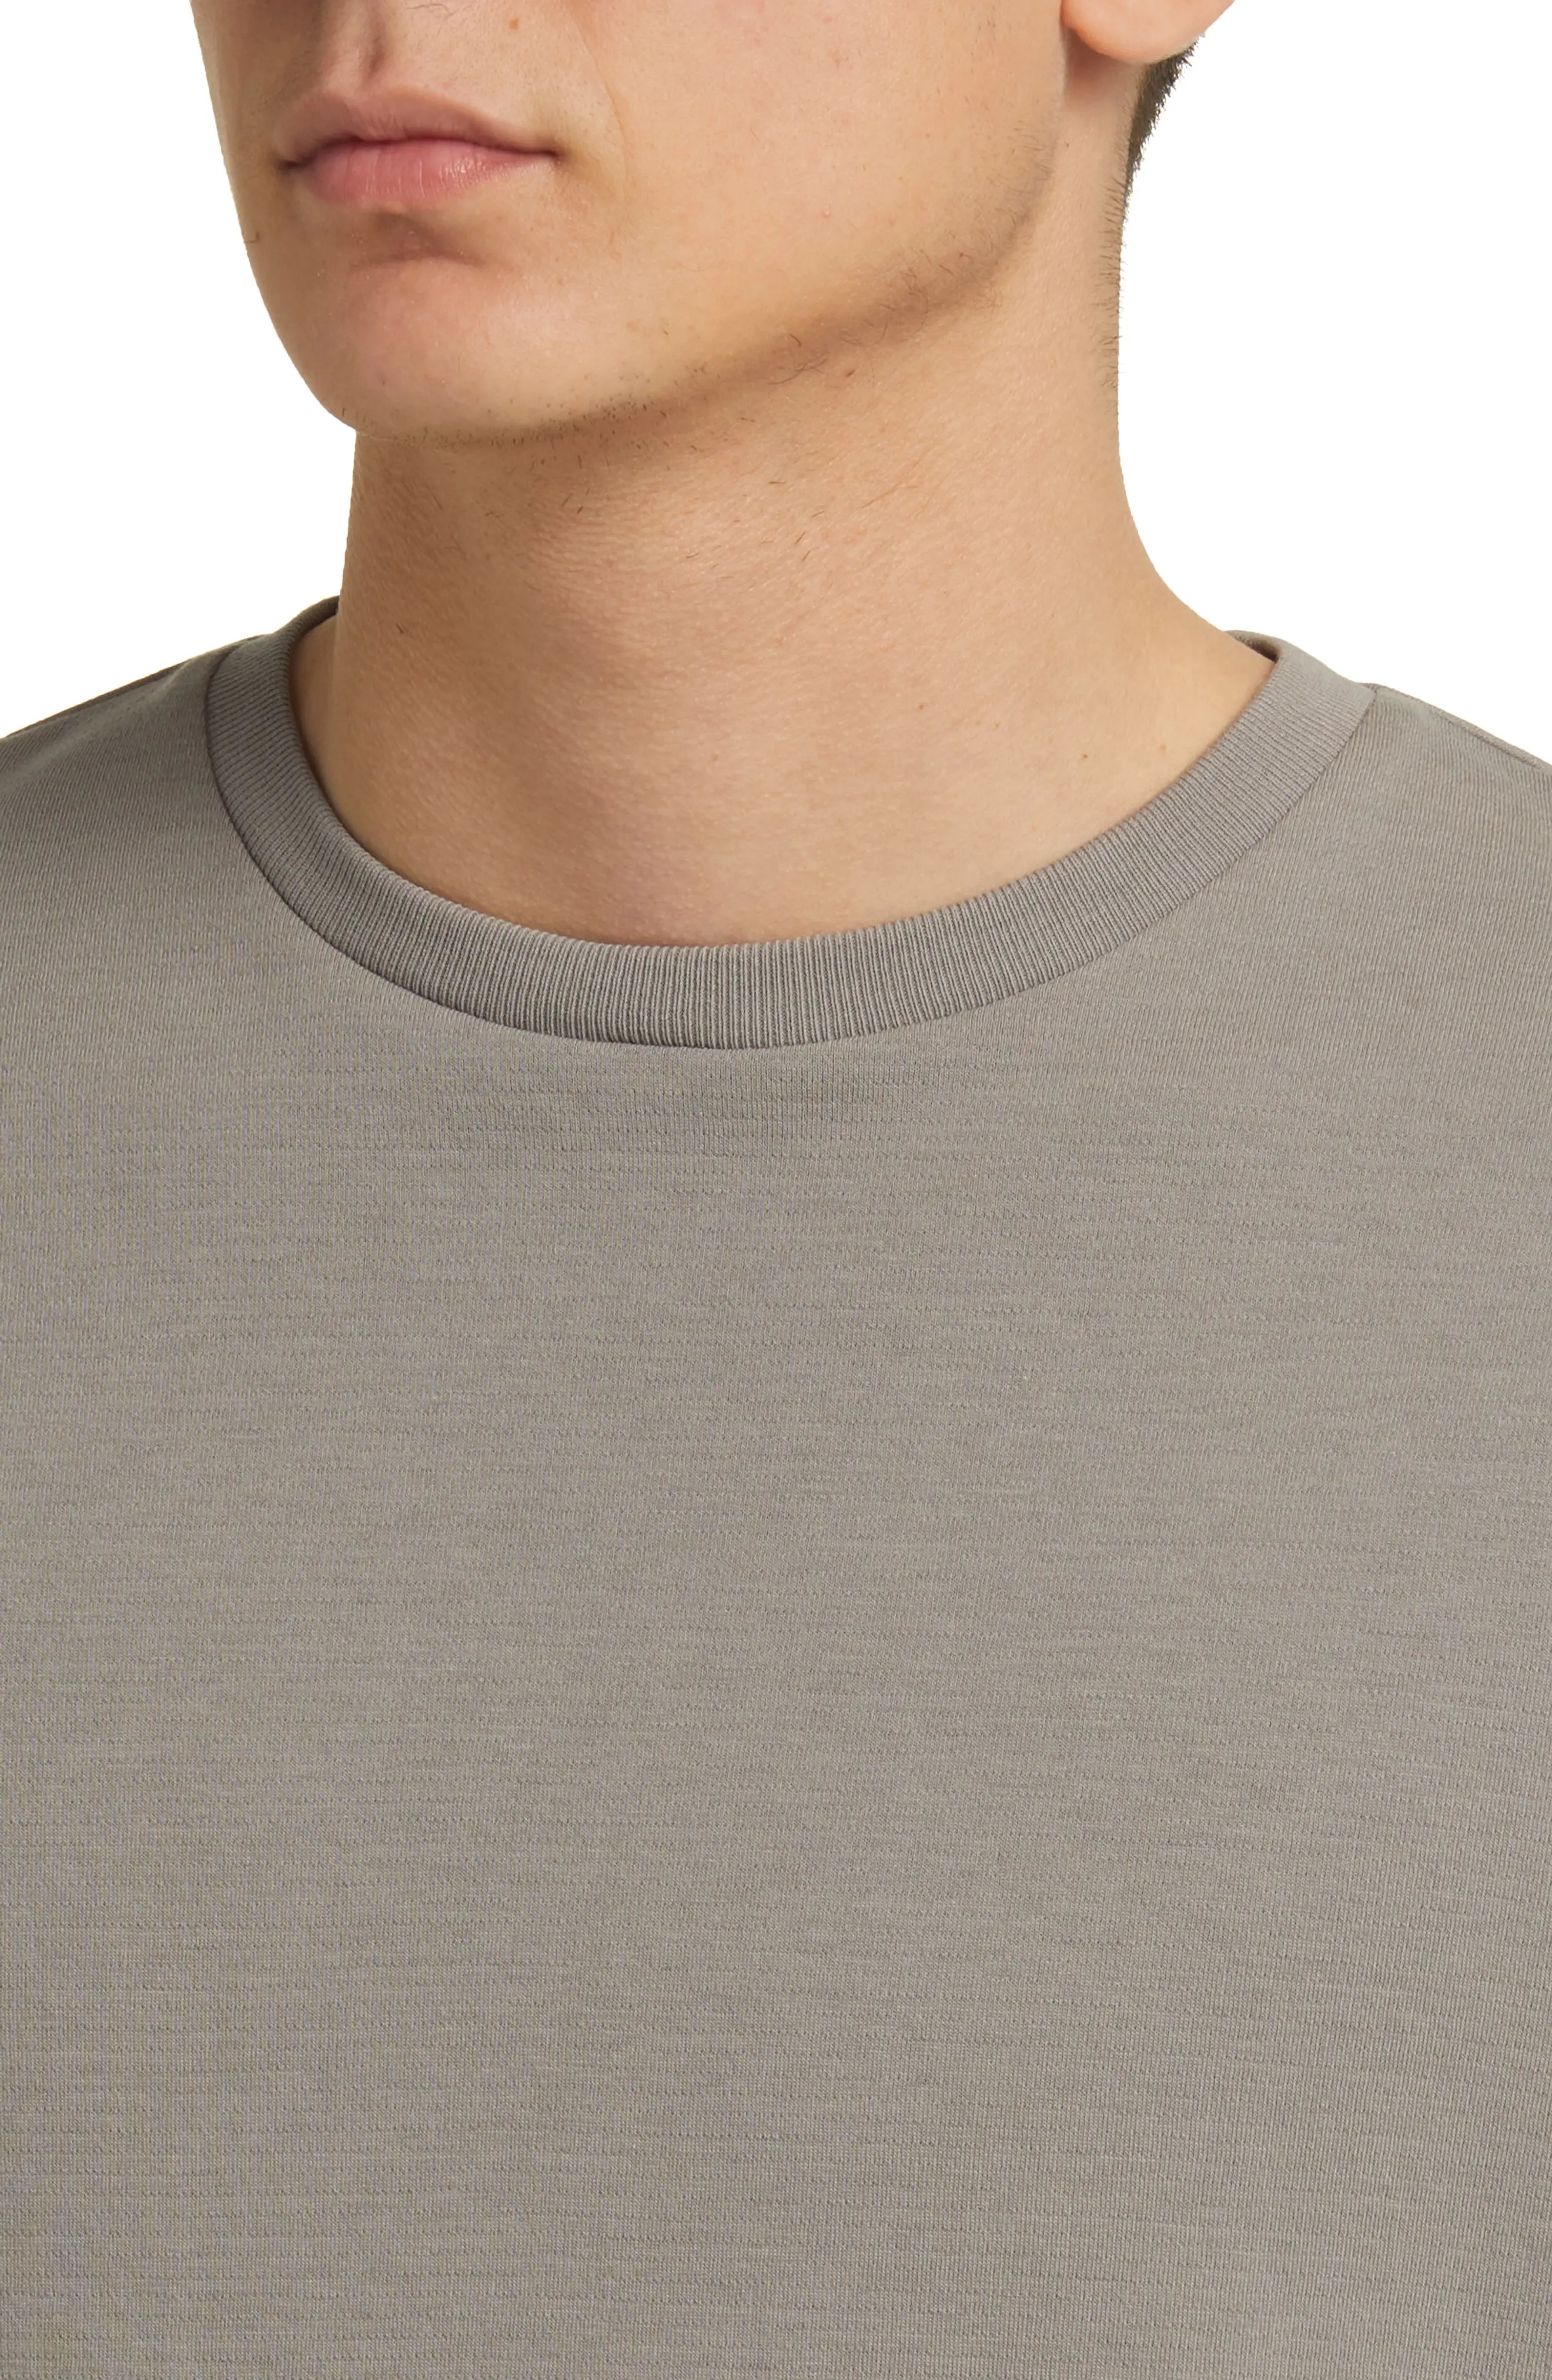 Duo Fold Long Sleeve Cotton T-Shirt - 4